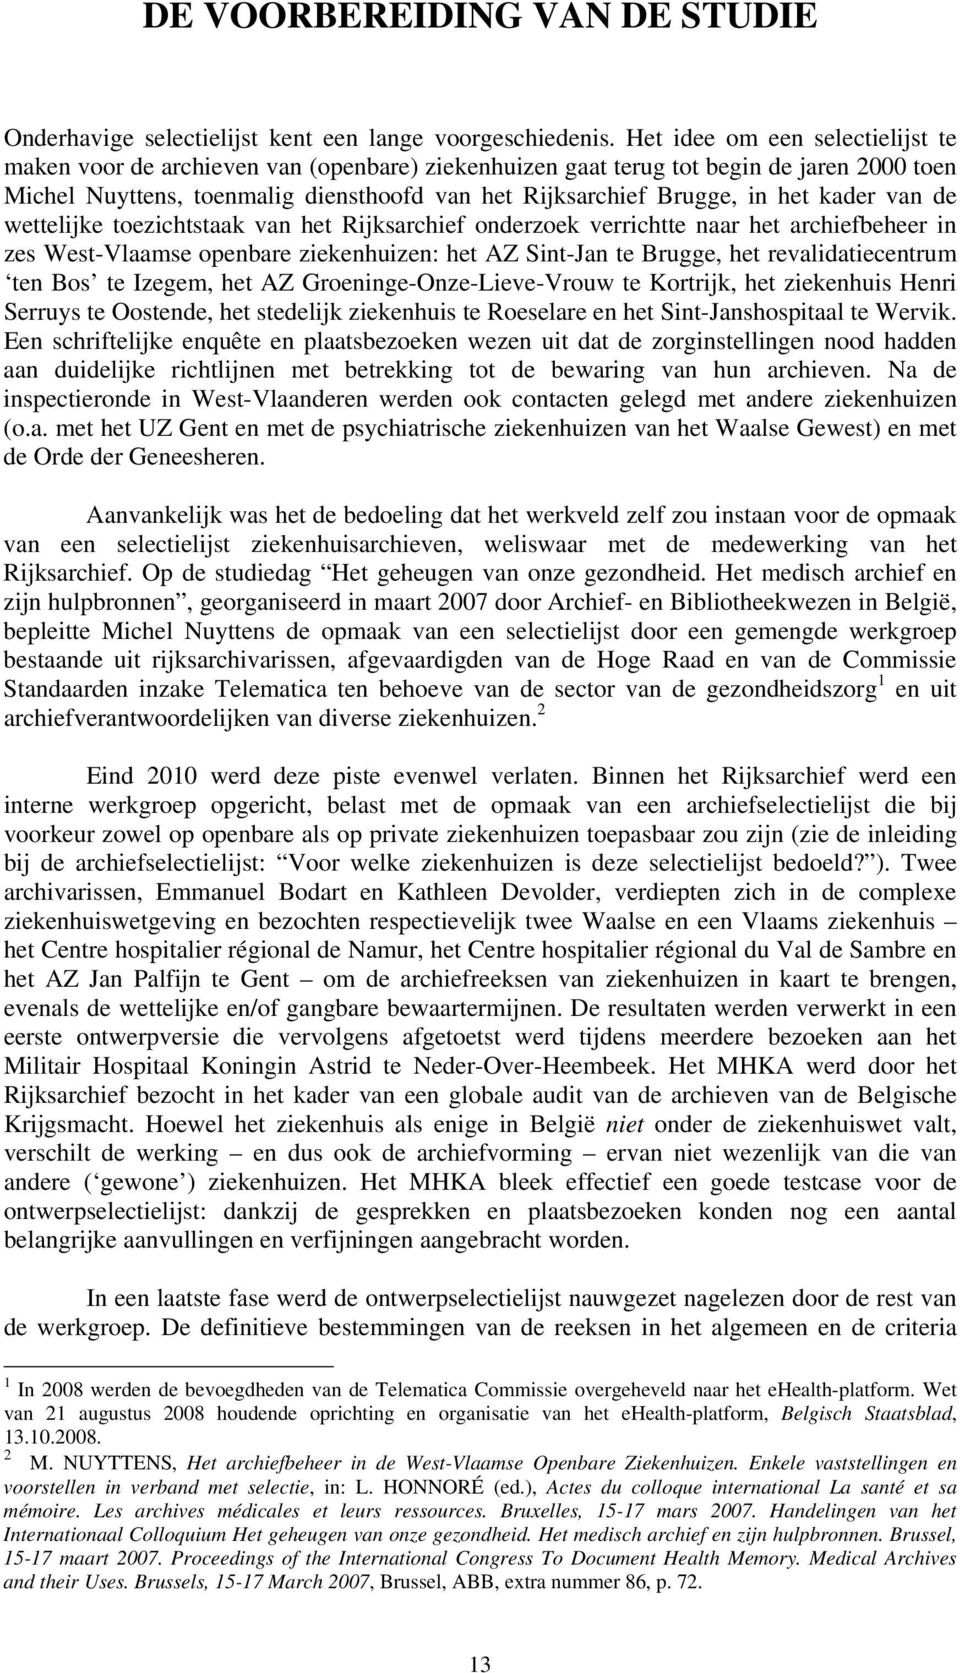 kader van de wettelijke toezichtstaak van het Rijksarchief onderzoek verrichtte naar het archiefbeheer in zes West-Vlaamse openbare ziekenhuizen: het AZ Sint-Jan te Brugge, het revalidatiecentrum ten